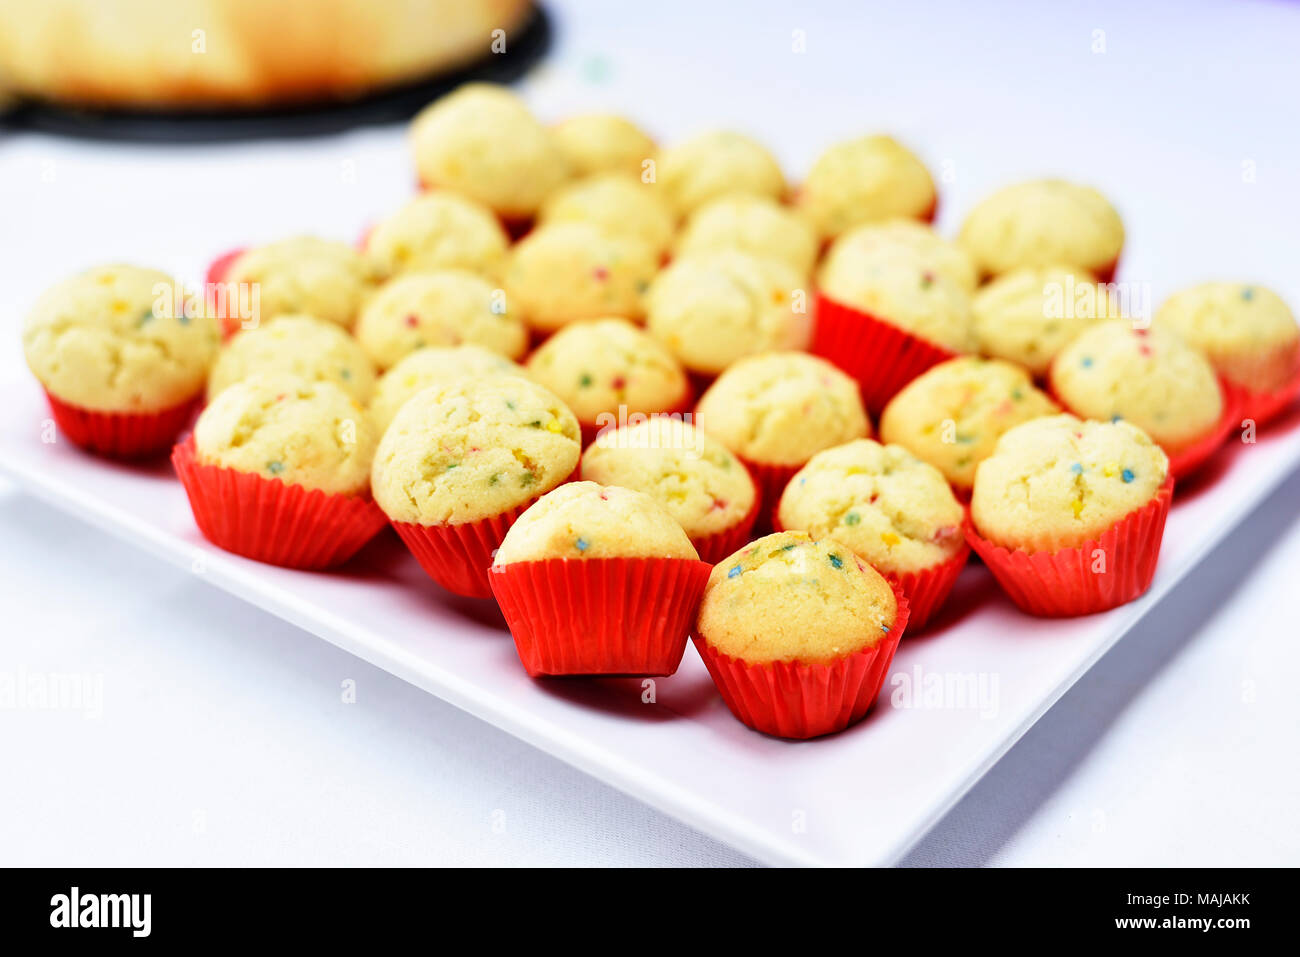 Leckere Cupcakes auf einem weissen Teller, Dessert Arrangement. Stockfoto